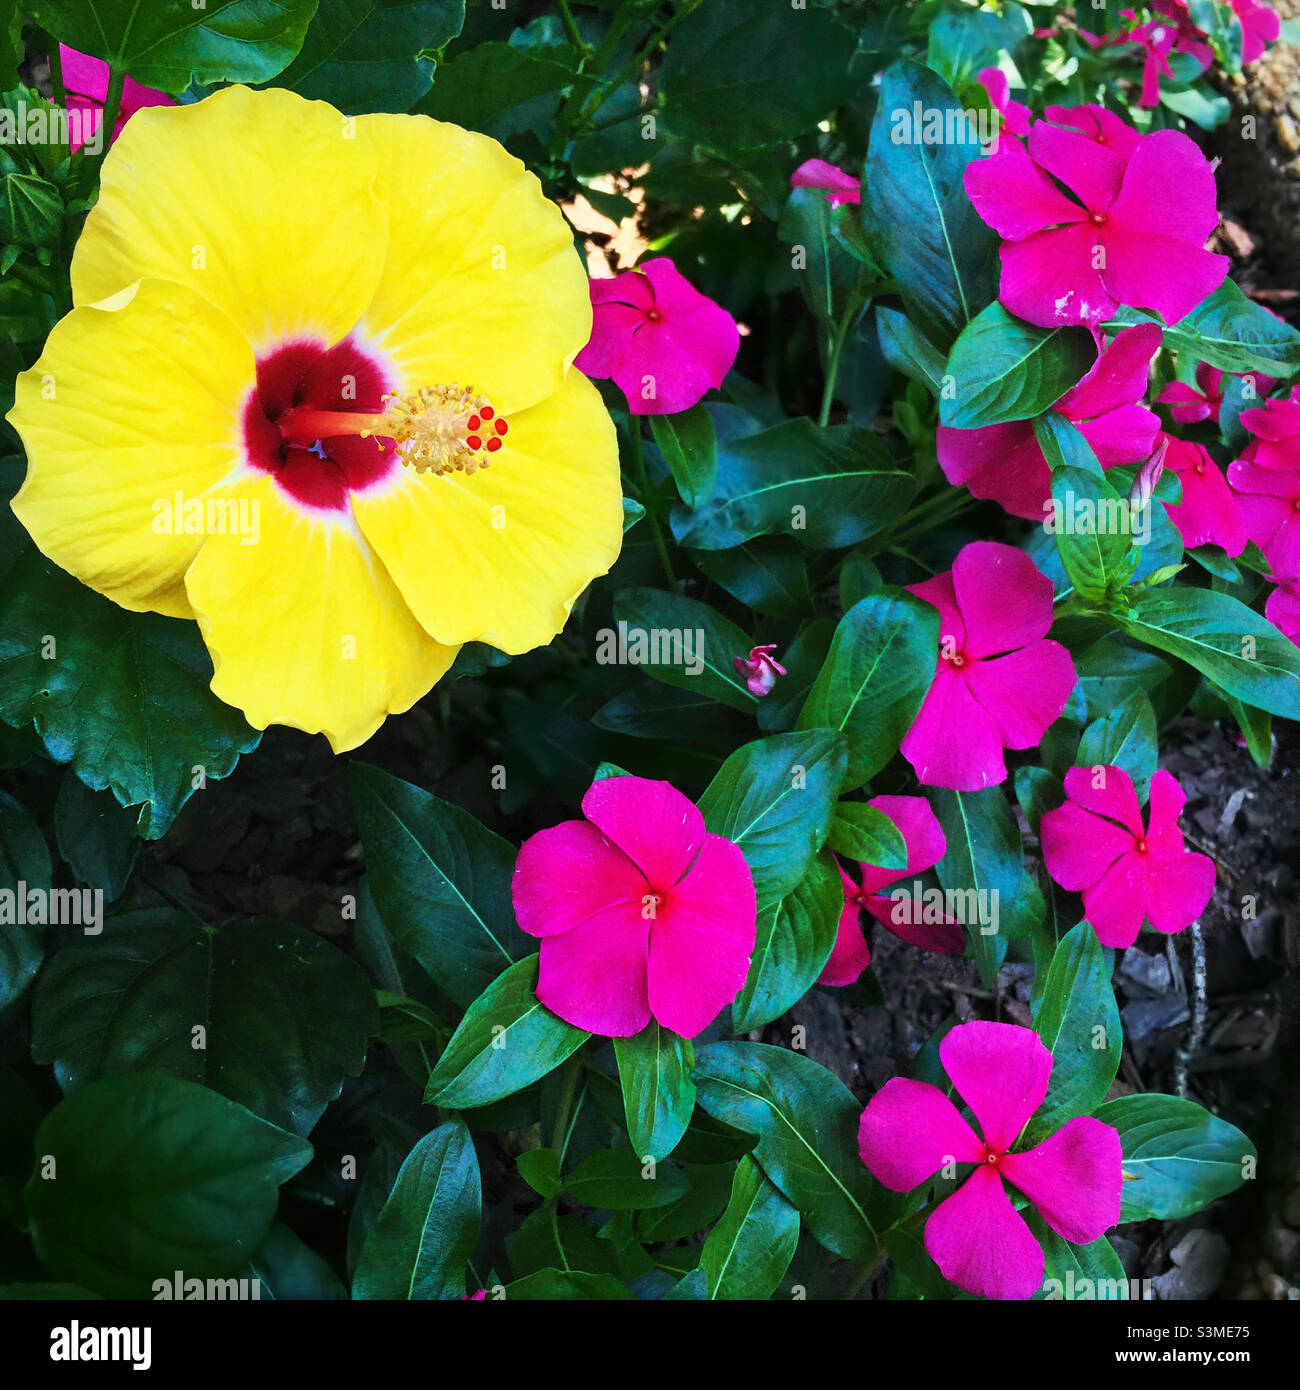 Colori vibranti contrastanti con ibisco giallo e impaziens rosa che crescono l'uno accanto all'altro. Foto Stock